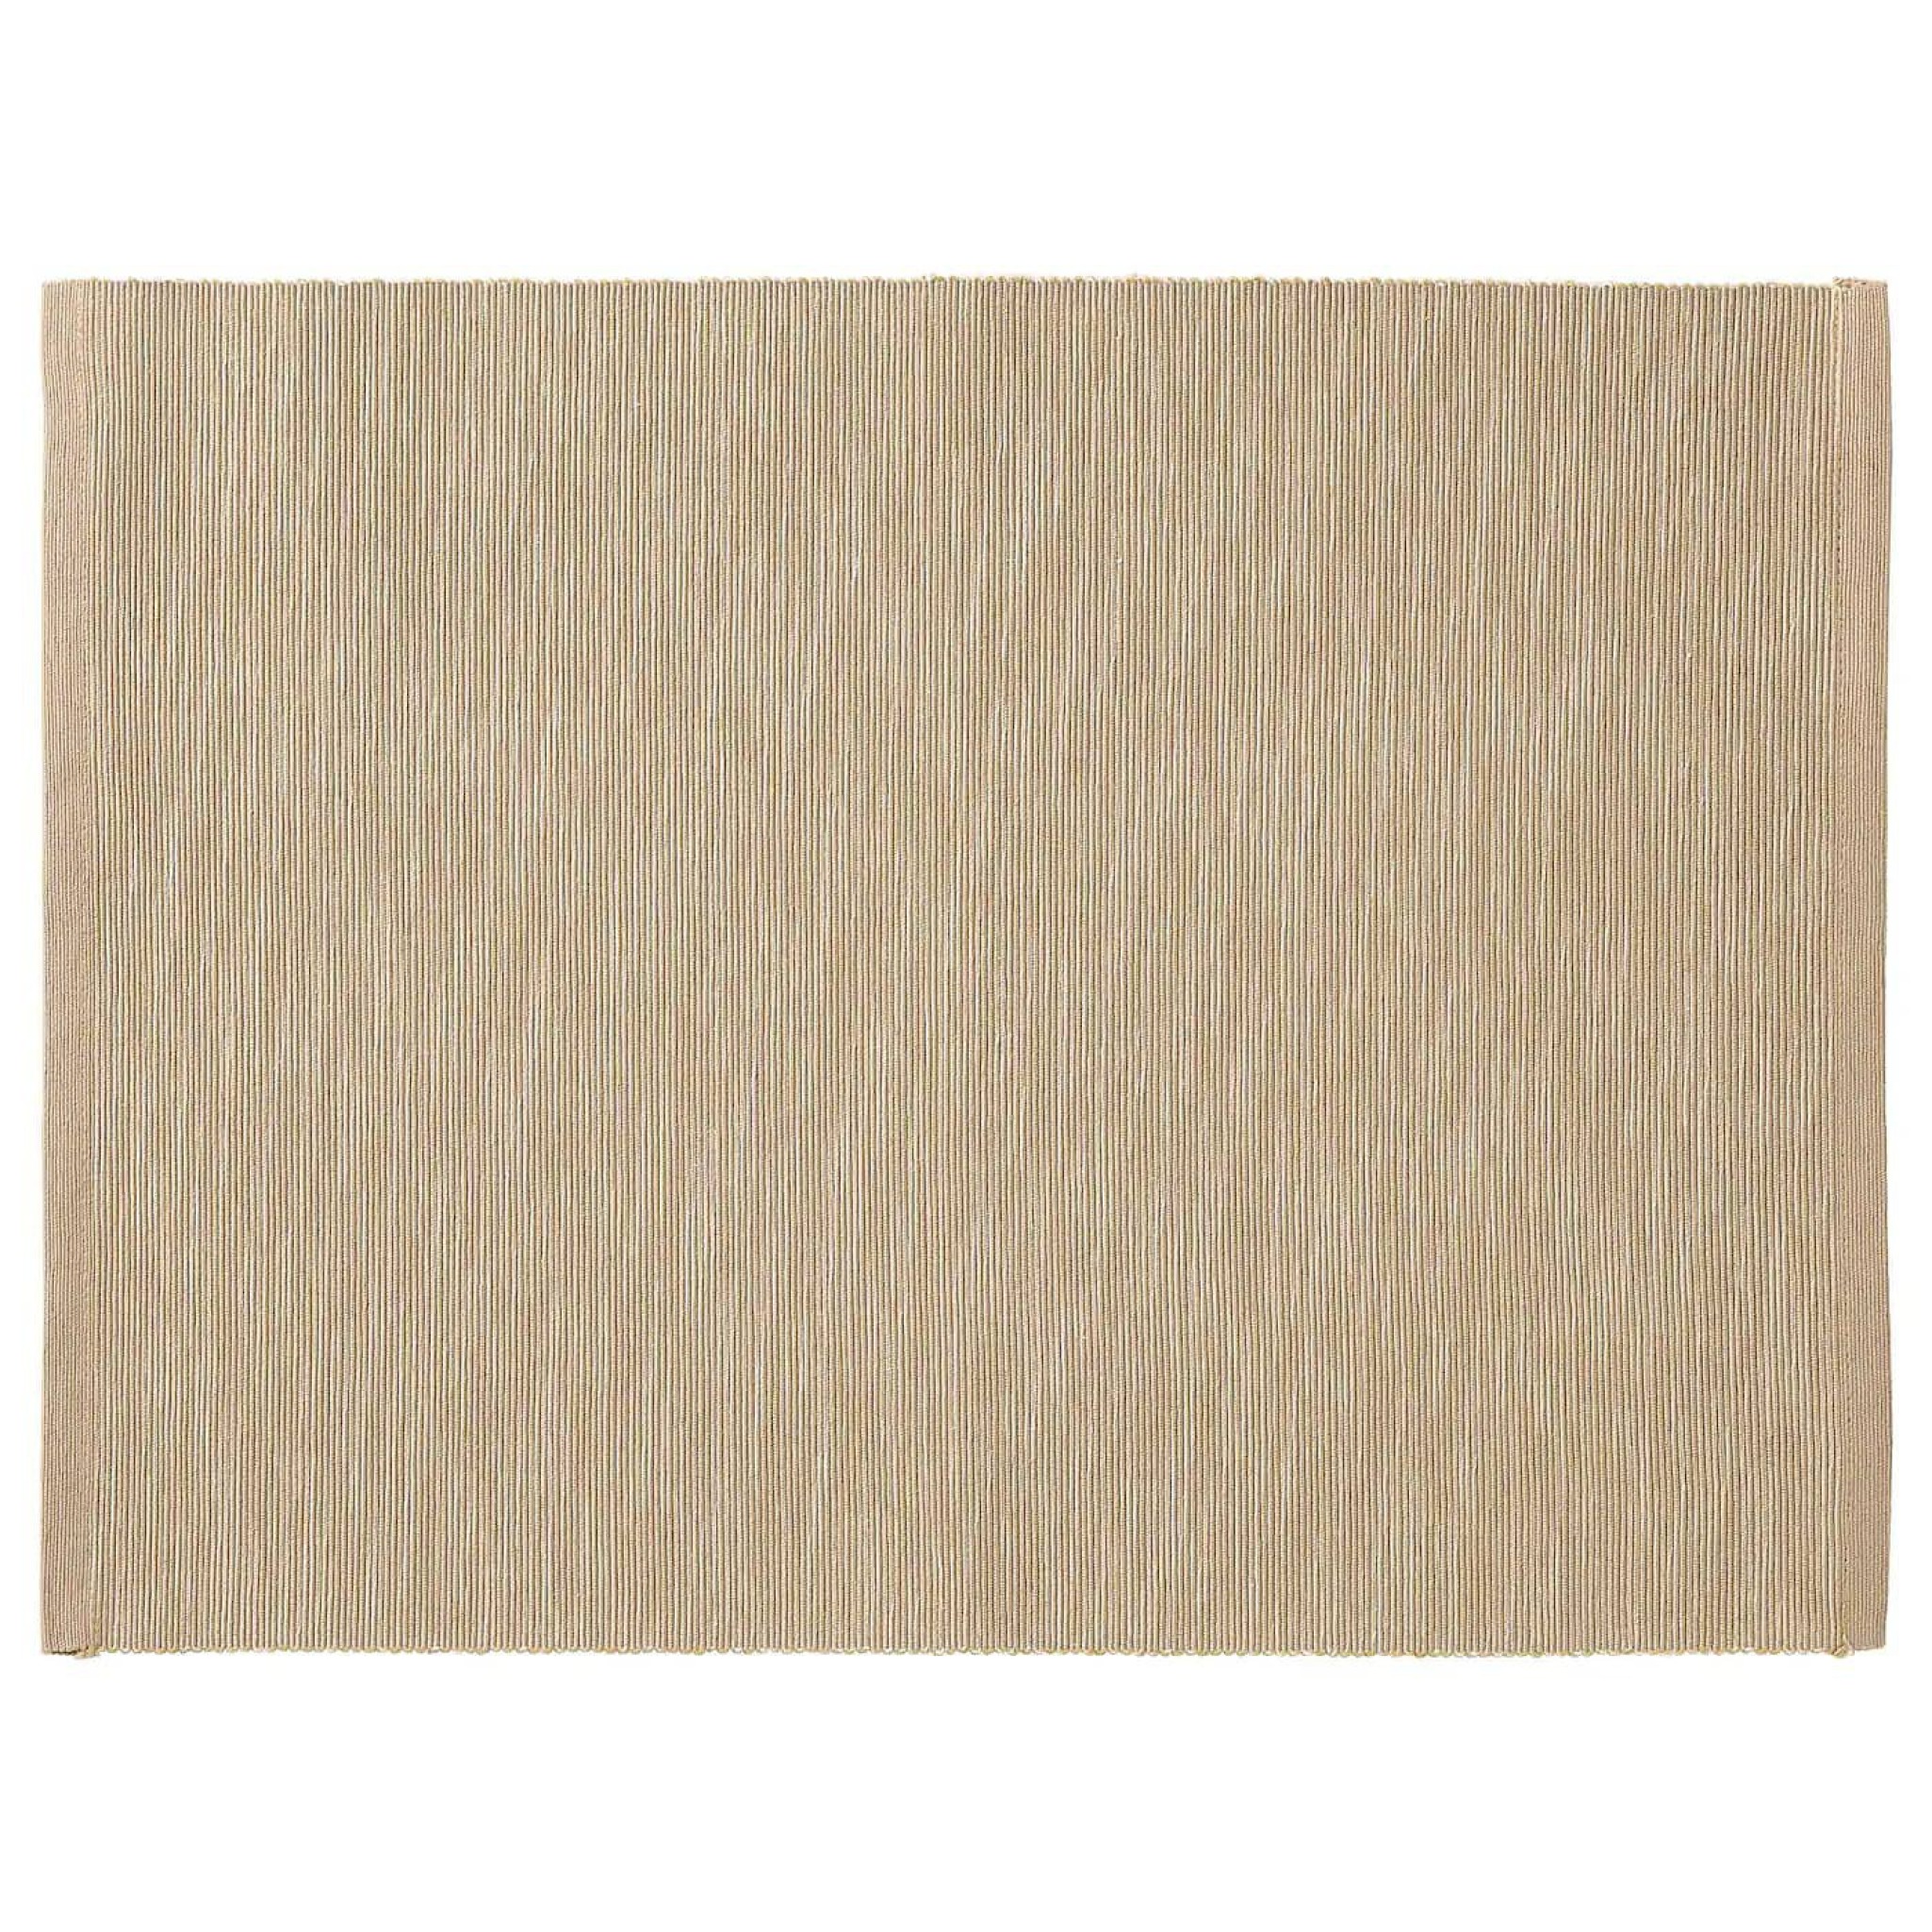  زیربشقابی پارچه ای بژ ایکیا مدل MARIT IKEA MARIT Place mat beige ابعاد 35×45 سانتی متر عدم تغییر رنگ پارچه بعد از شستشو 